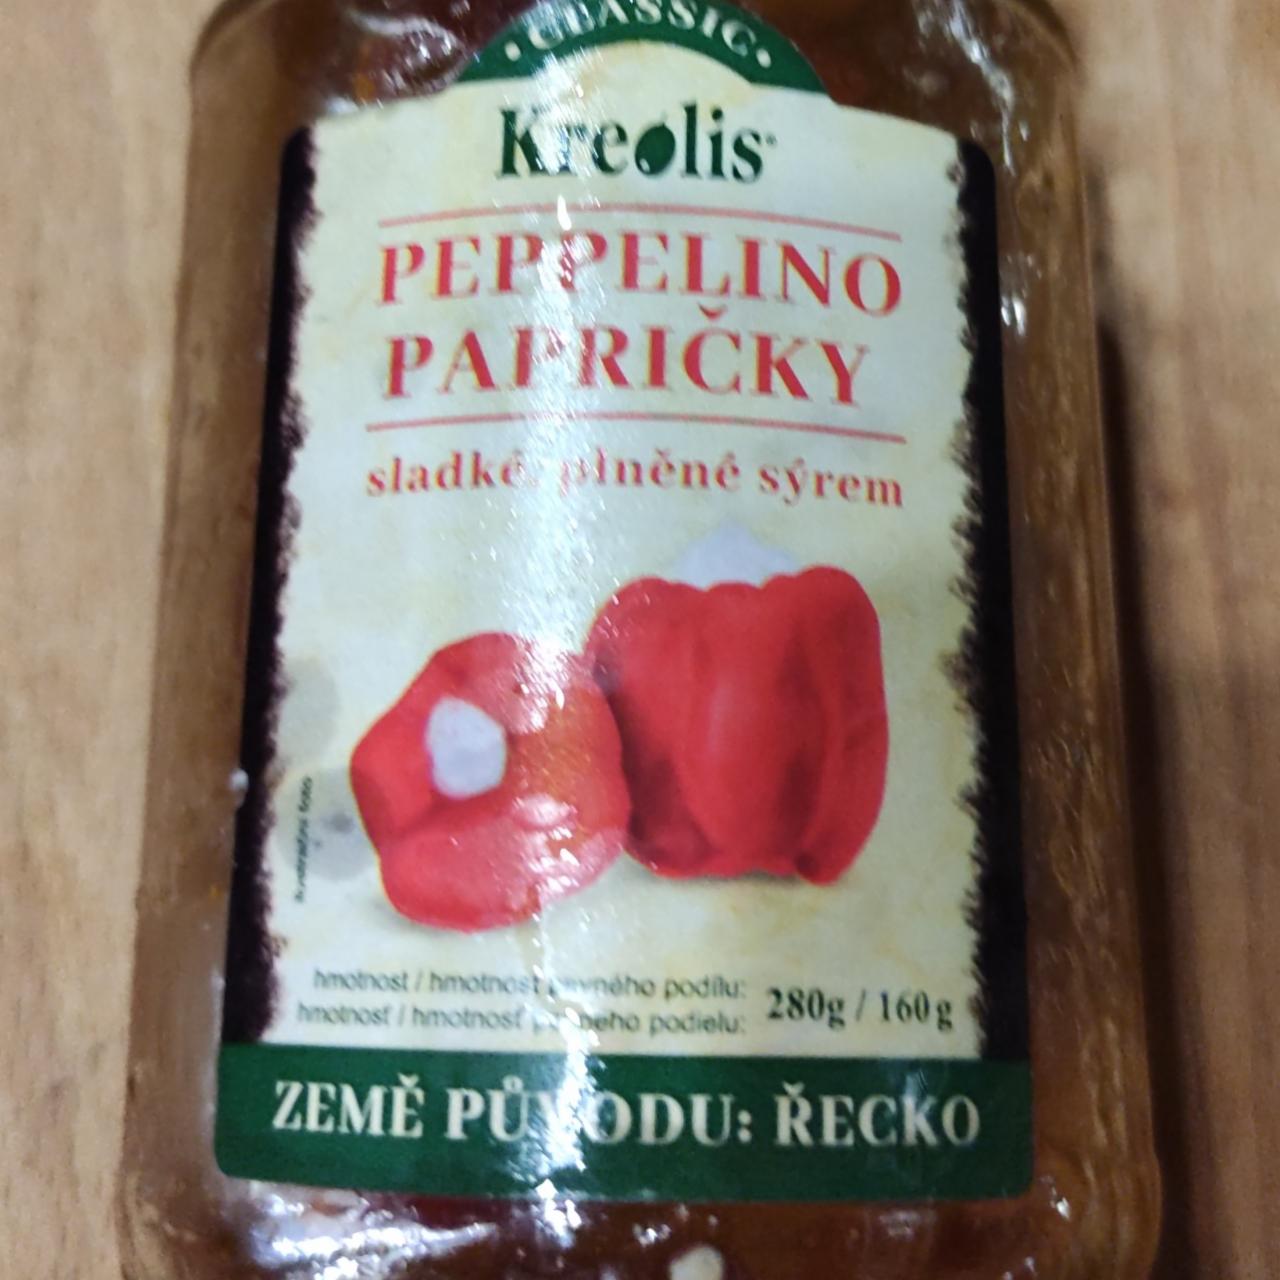 Fotografie - Peppelino papričky sladké plněné sýrem Kreolis